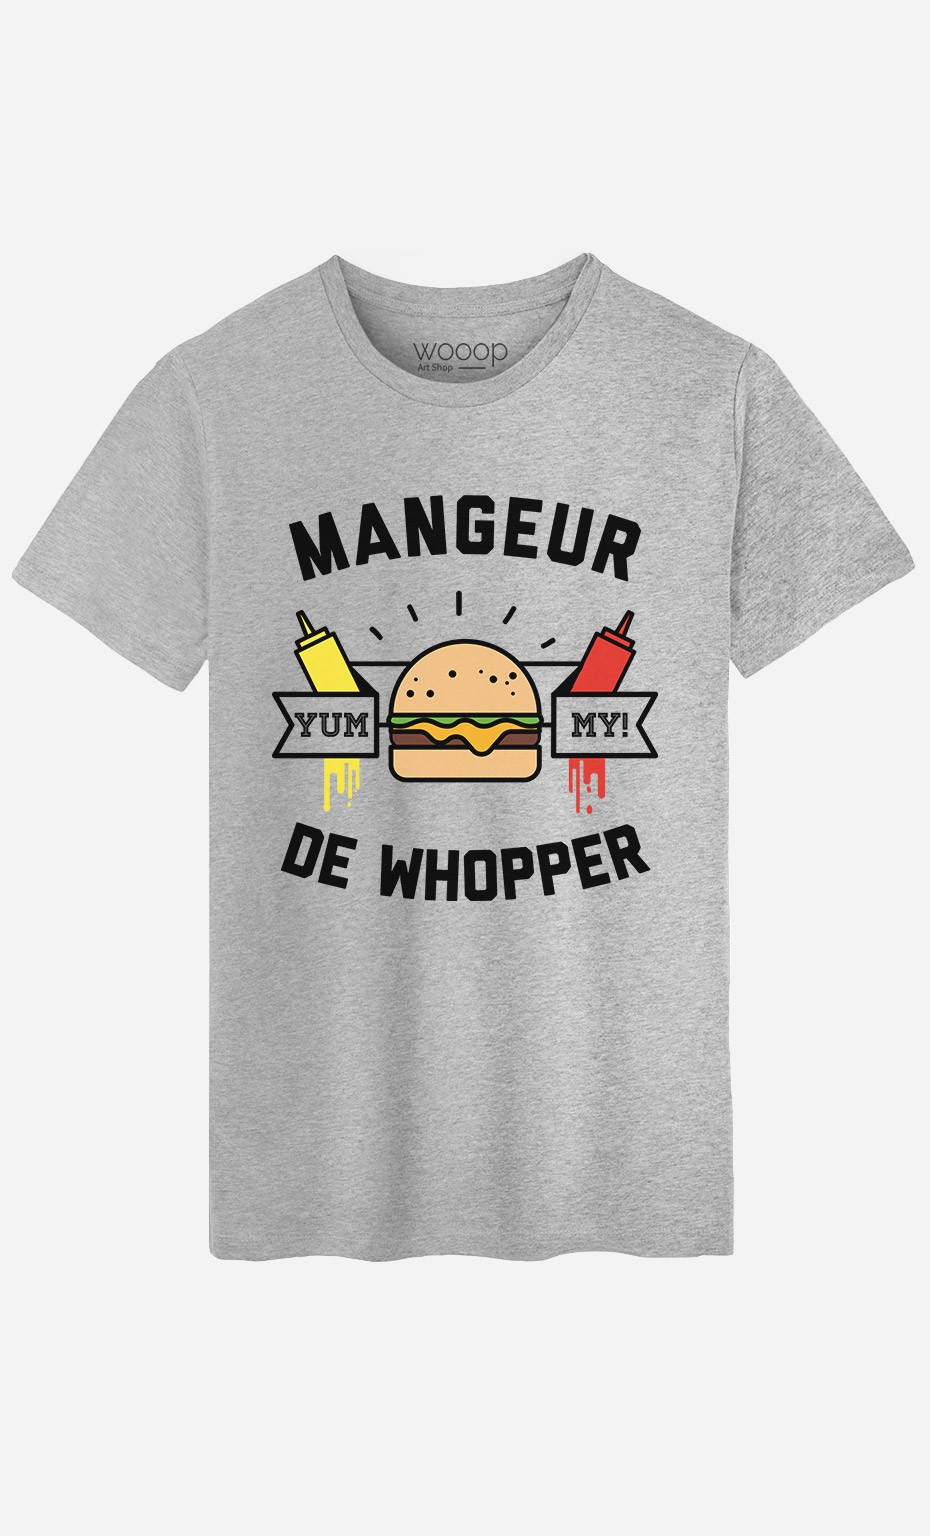 T-Shirt Homme Mangeur de Whopper